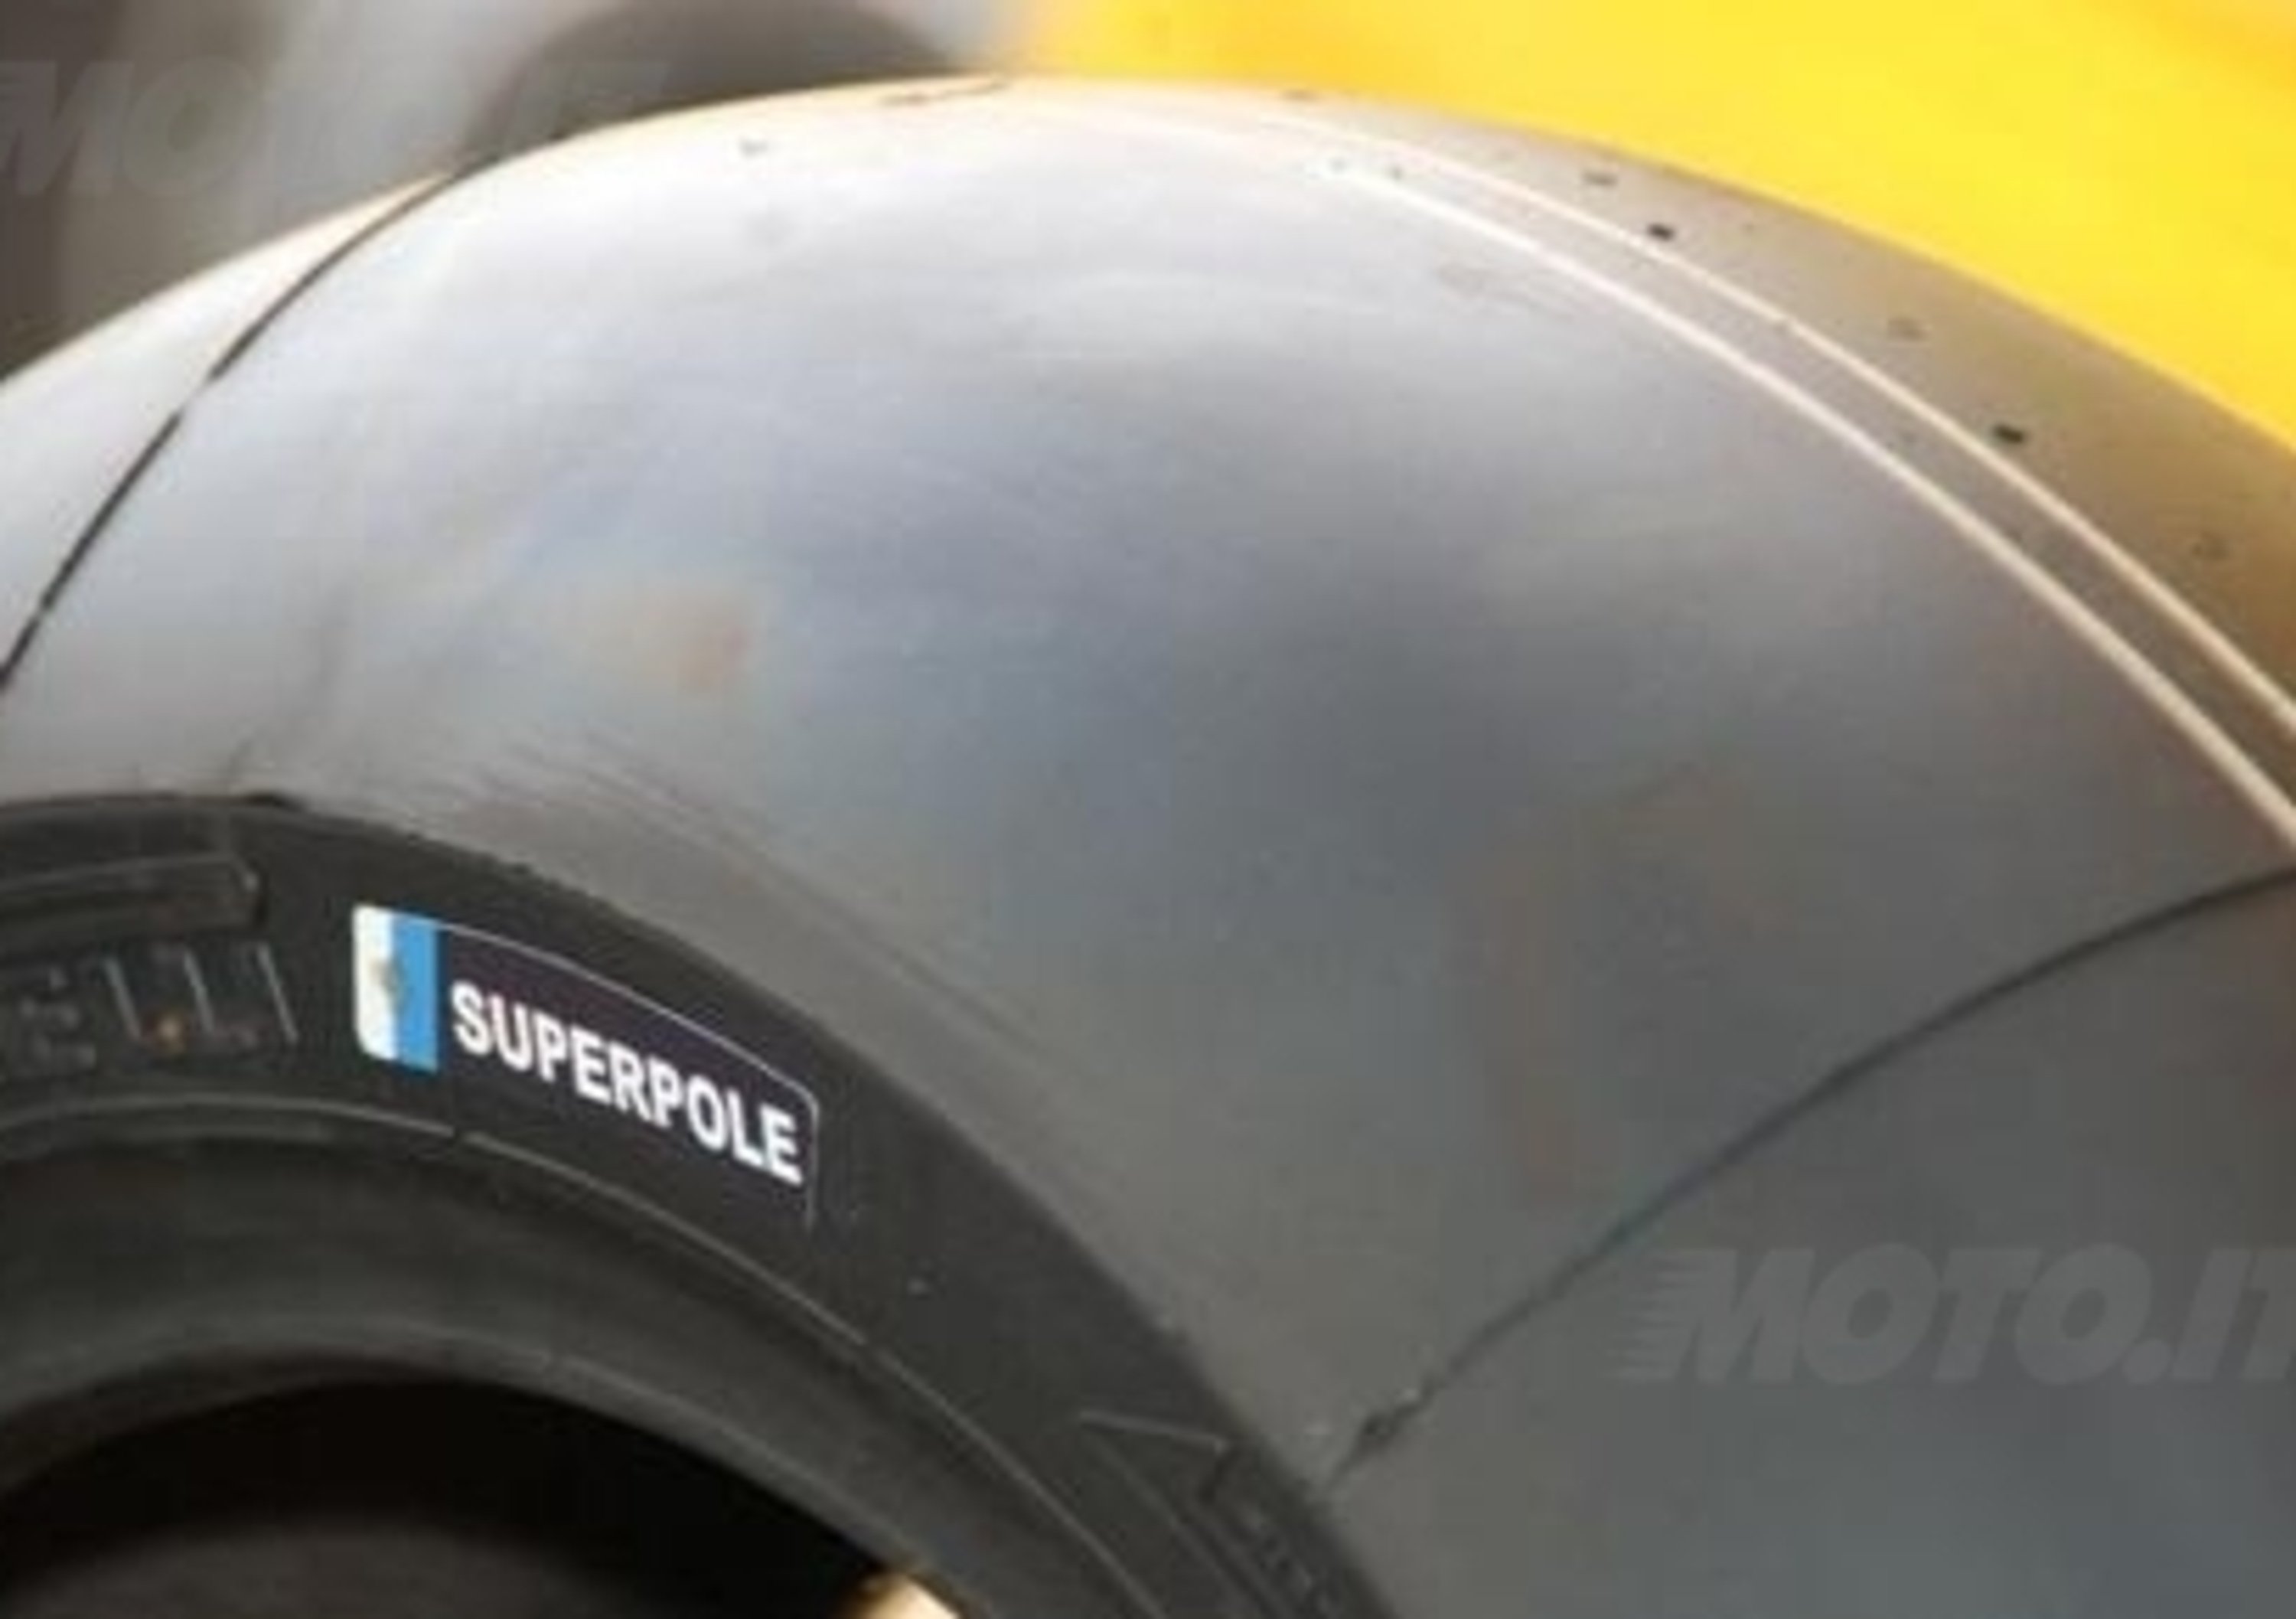 Pirelli. Bandiere sui pneumatici della Superpole